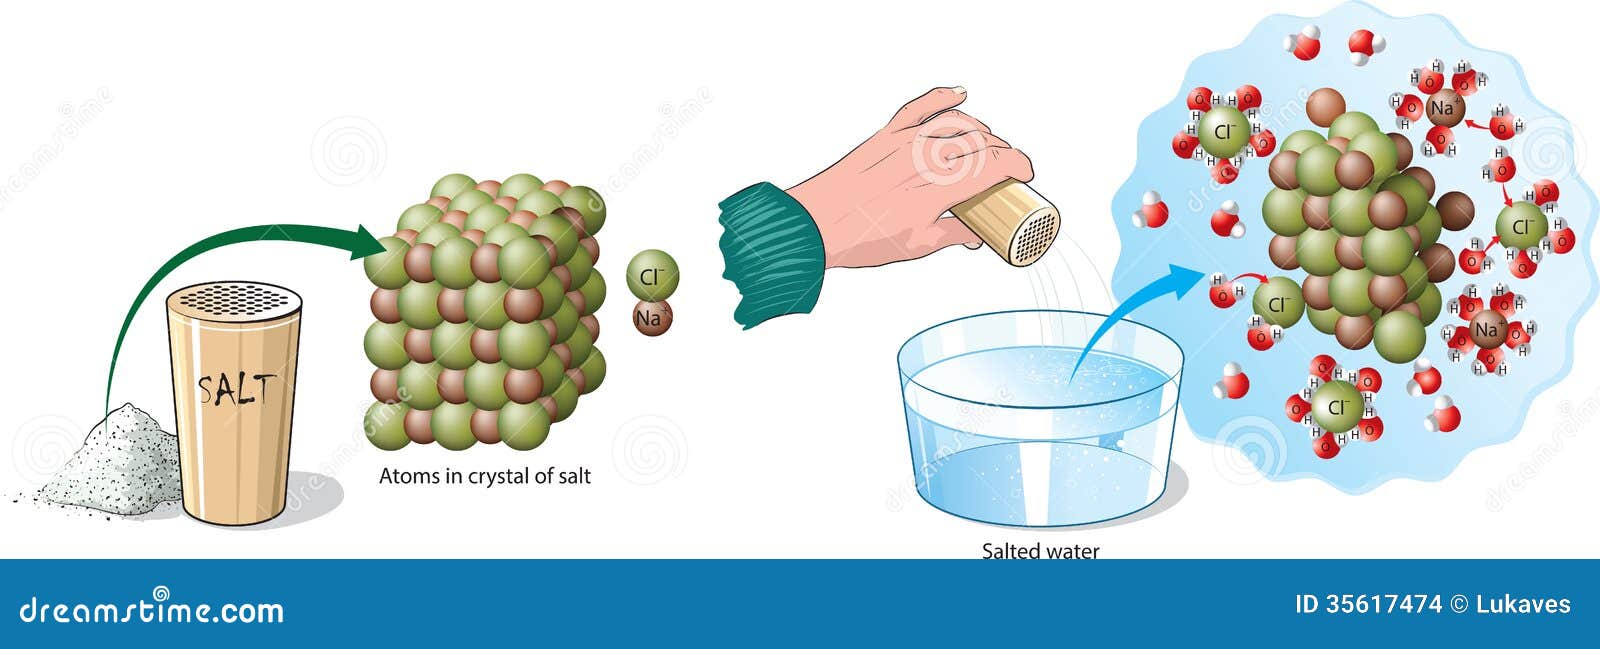 Растворение натрия в воде реакция. Реакция растворения соли в воде. Растворение молекул в воде солей. Растворение в воде хлорида натрия. Растворение веществ в воде иллюстрация.